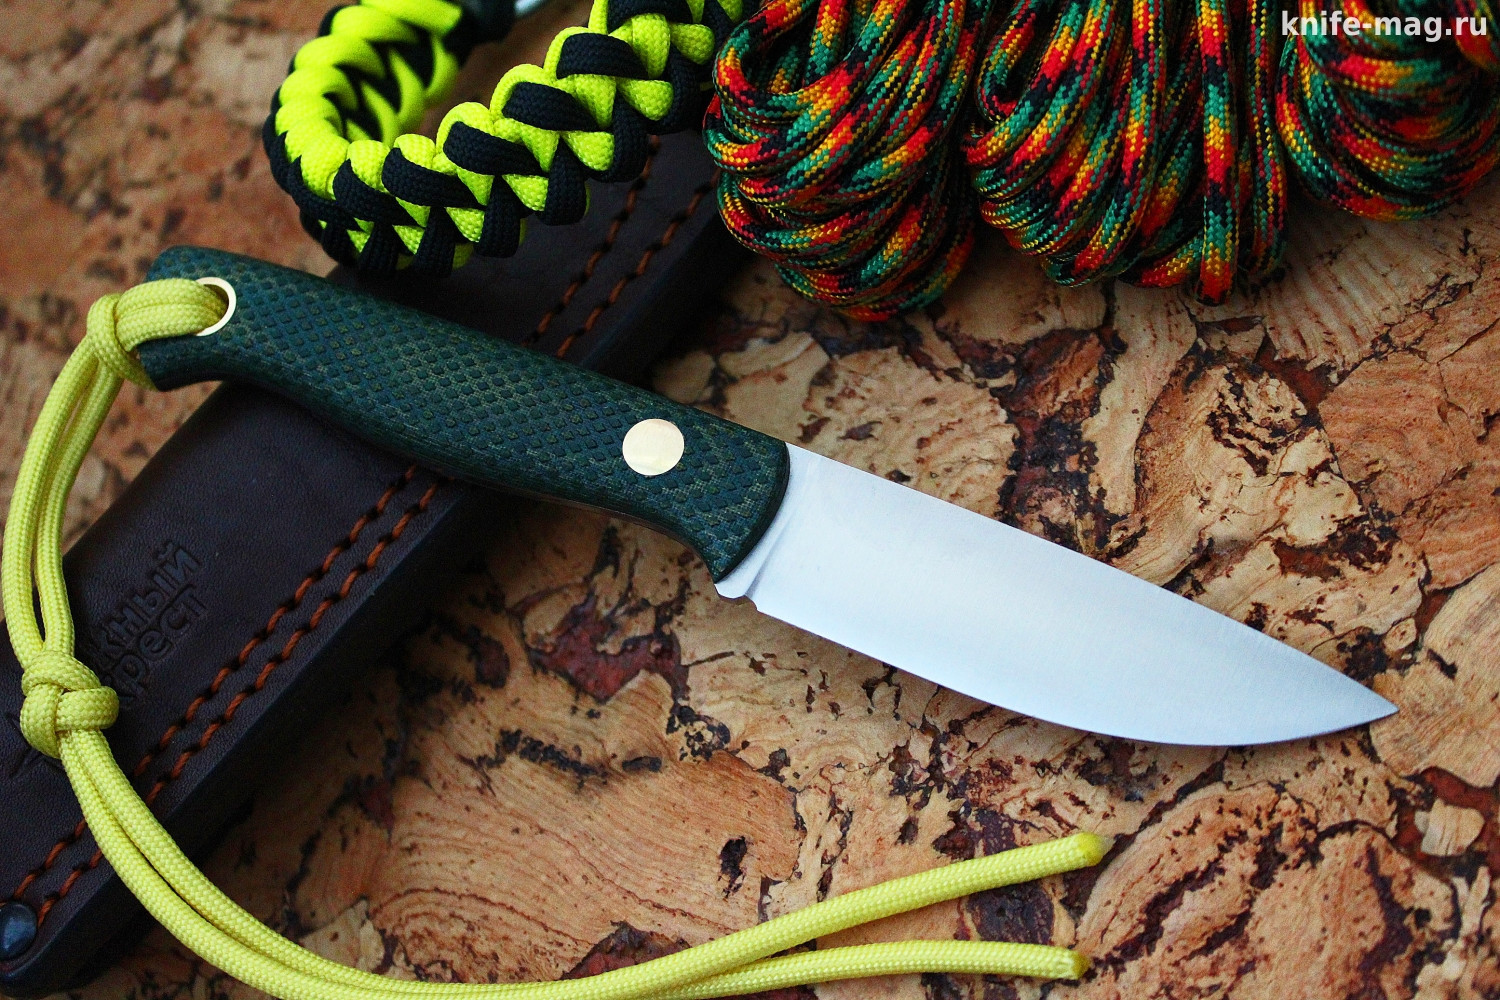 Туристический нож Small Bohler N690 конвекс, накладки micarta Желто-Зеленая, оружейная насечка